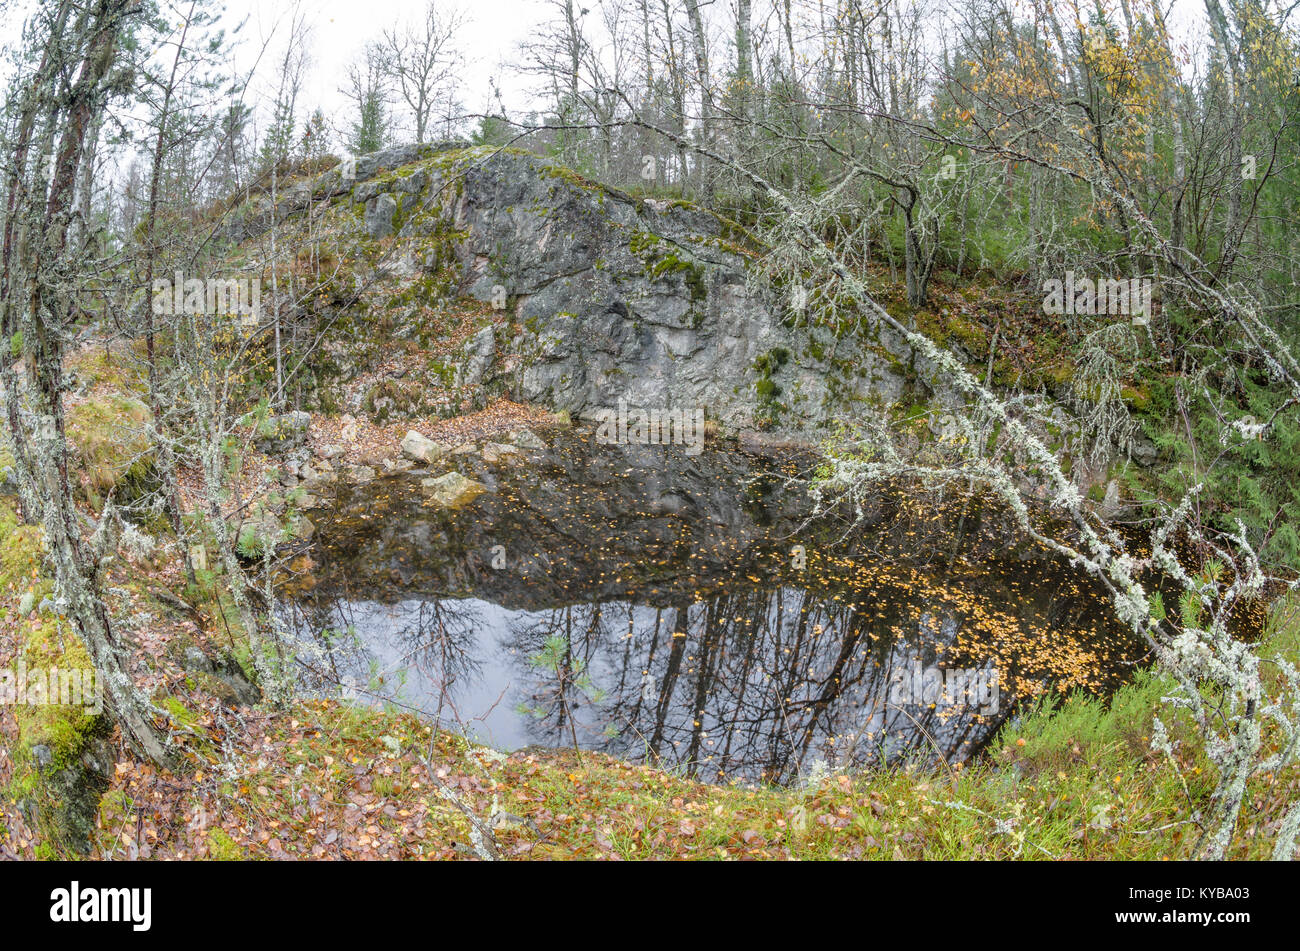 Landsverk 2, Evje Mineralsti. A finales de otoño no hay hojas y reliquias son visibles en el bosque, por lo que es la mejor época para visitar este lugar. Foto de stock